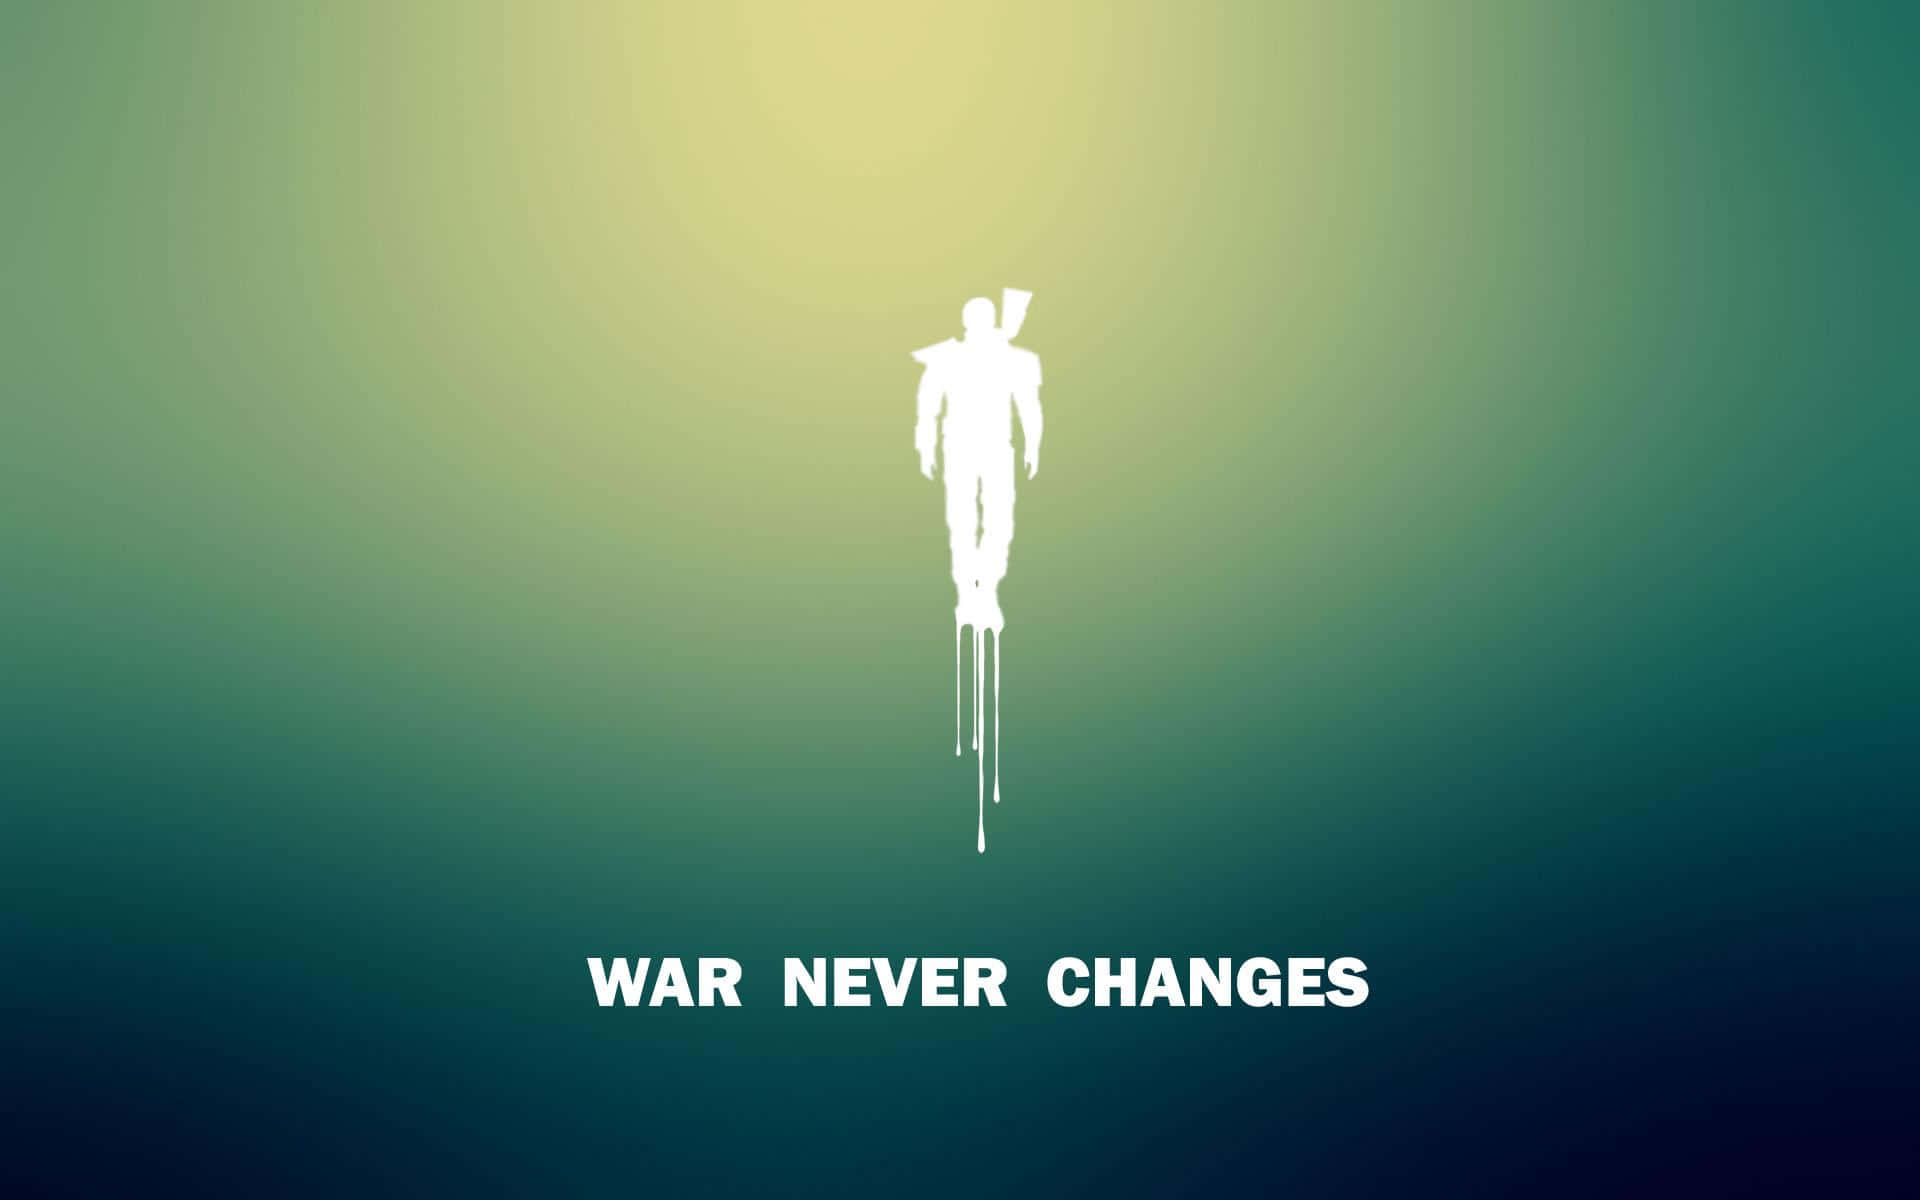 Krigetförändras Aldrig - En Minimalistisk Affisch. Wallpaper